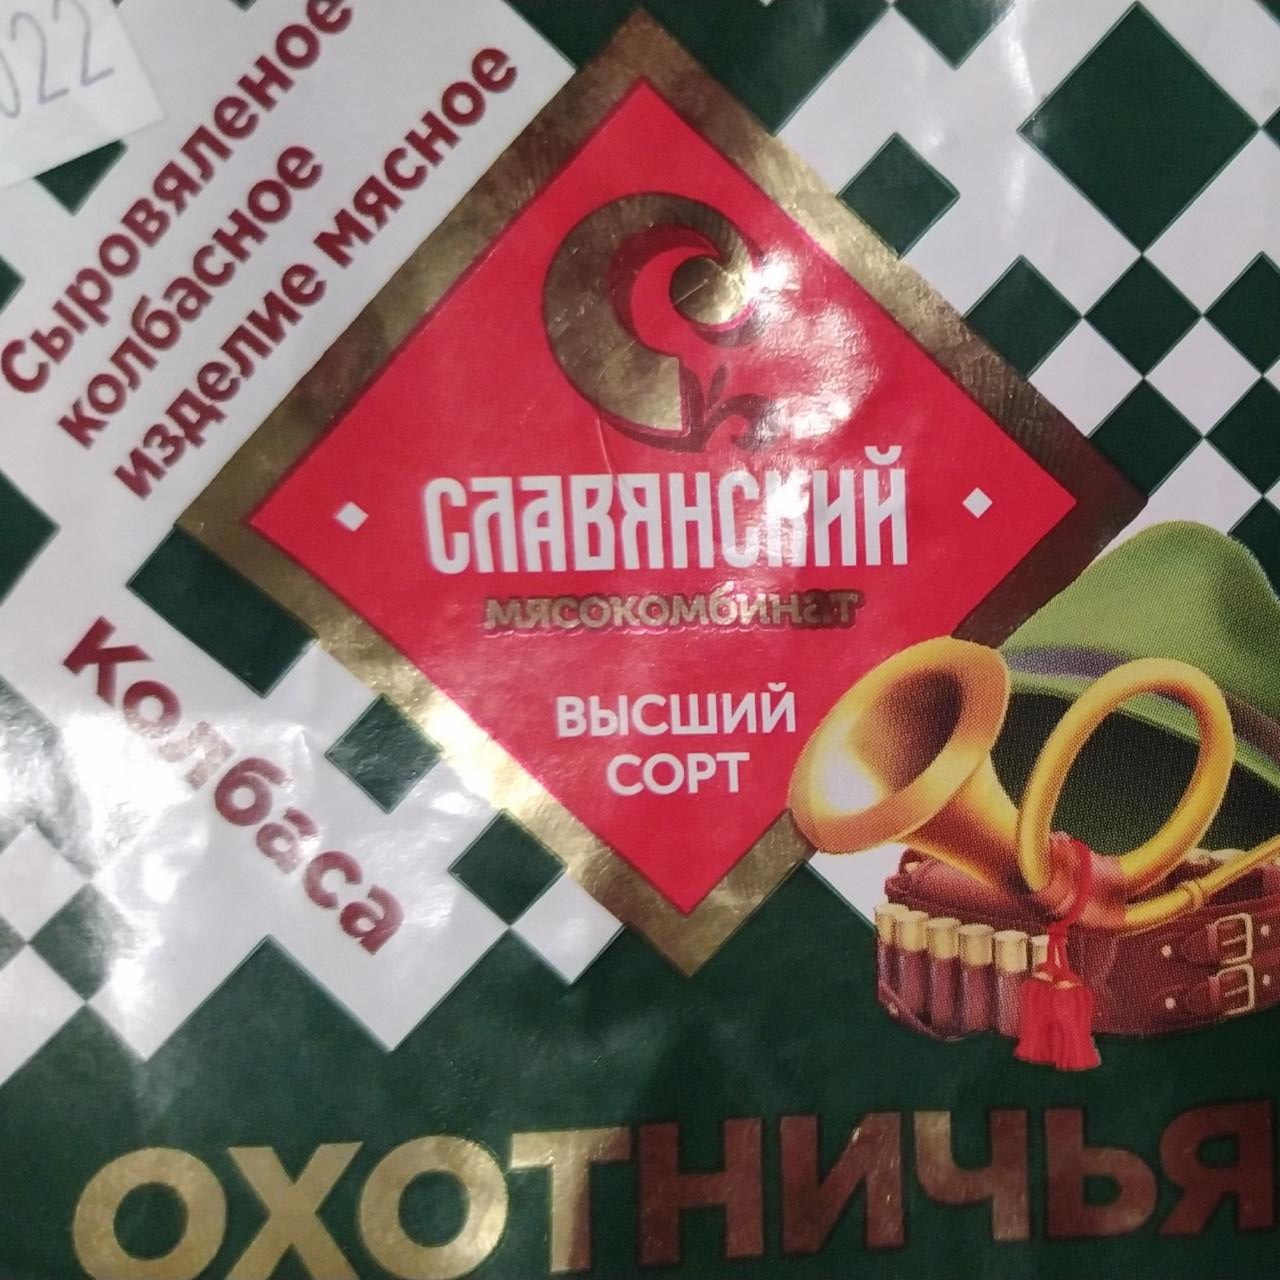 Фото - Колбаса охотничья высший сорт Славянский мясокомбинат